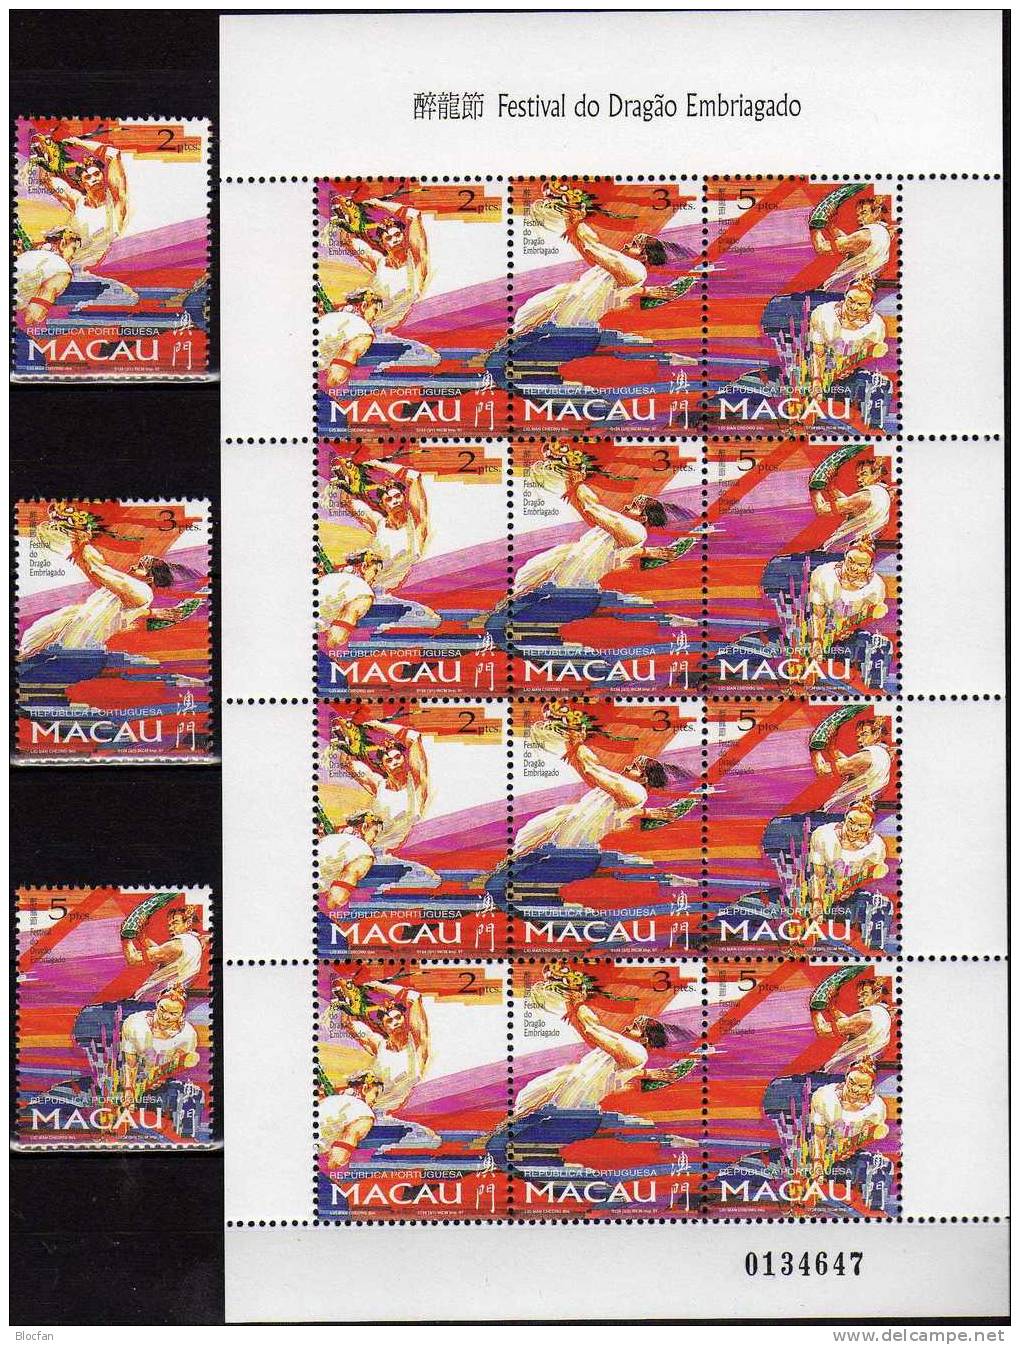 Drachenfestival Macao 913/15, ZD plus mini sheet ** 43€ Drachenfest mit Tänzer Bändern Fahnen Feuerwerk of MACAU